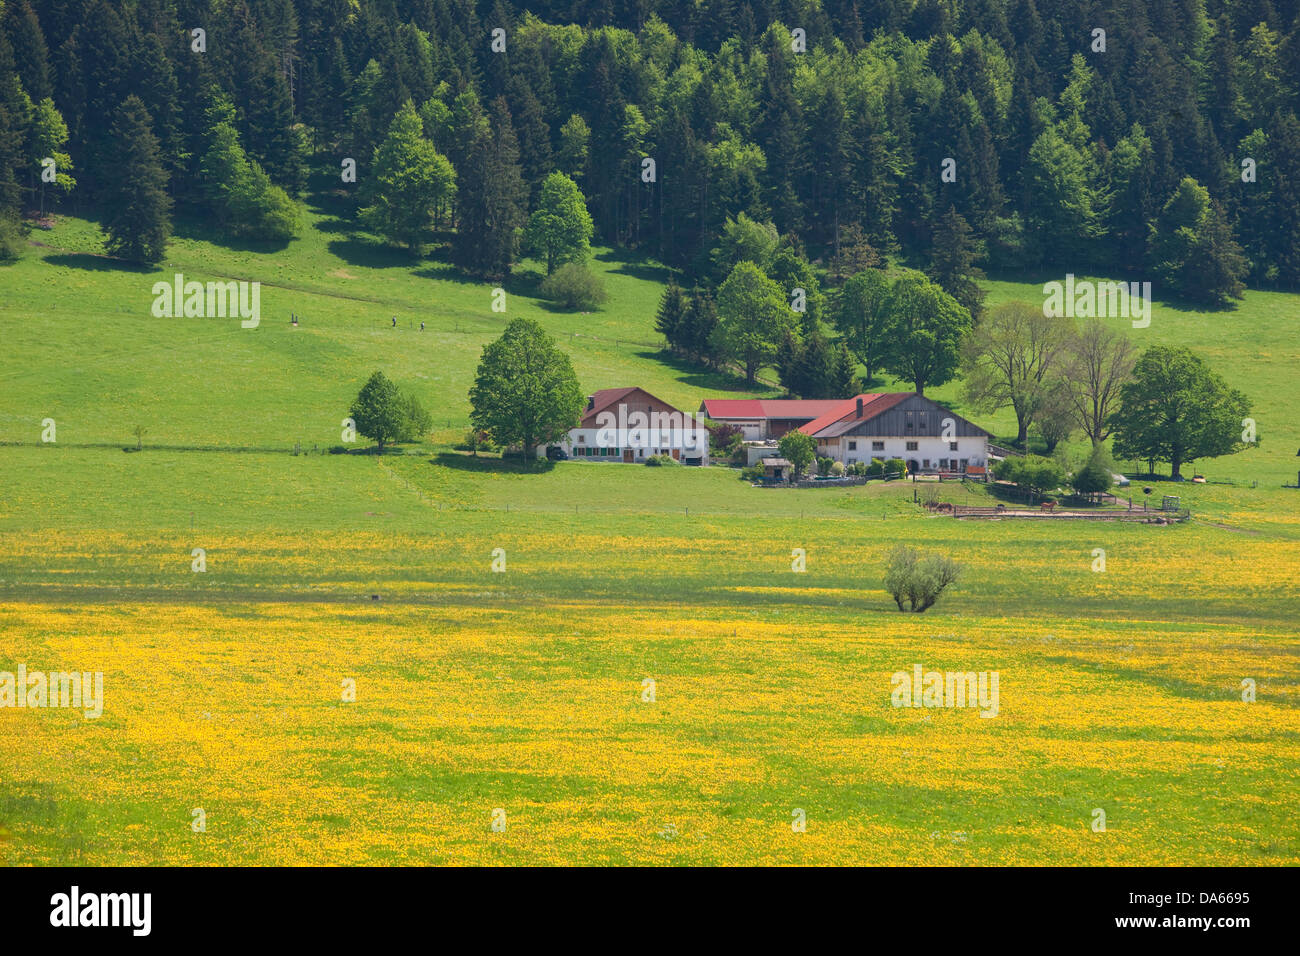 La Chaux-du-Milieux, canton, NE, Neuenburg, Neuchatel, Jura, village, agriculture, Switzerland, Europe, Le Locle, meadow Stock Photo